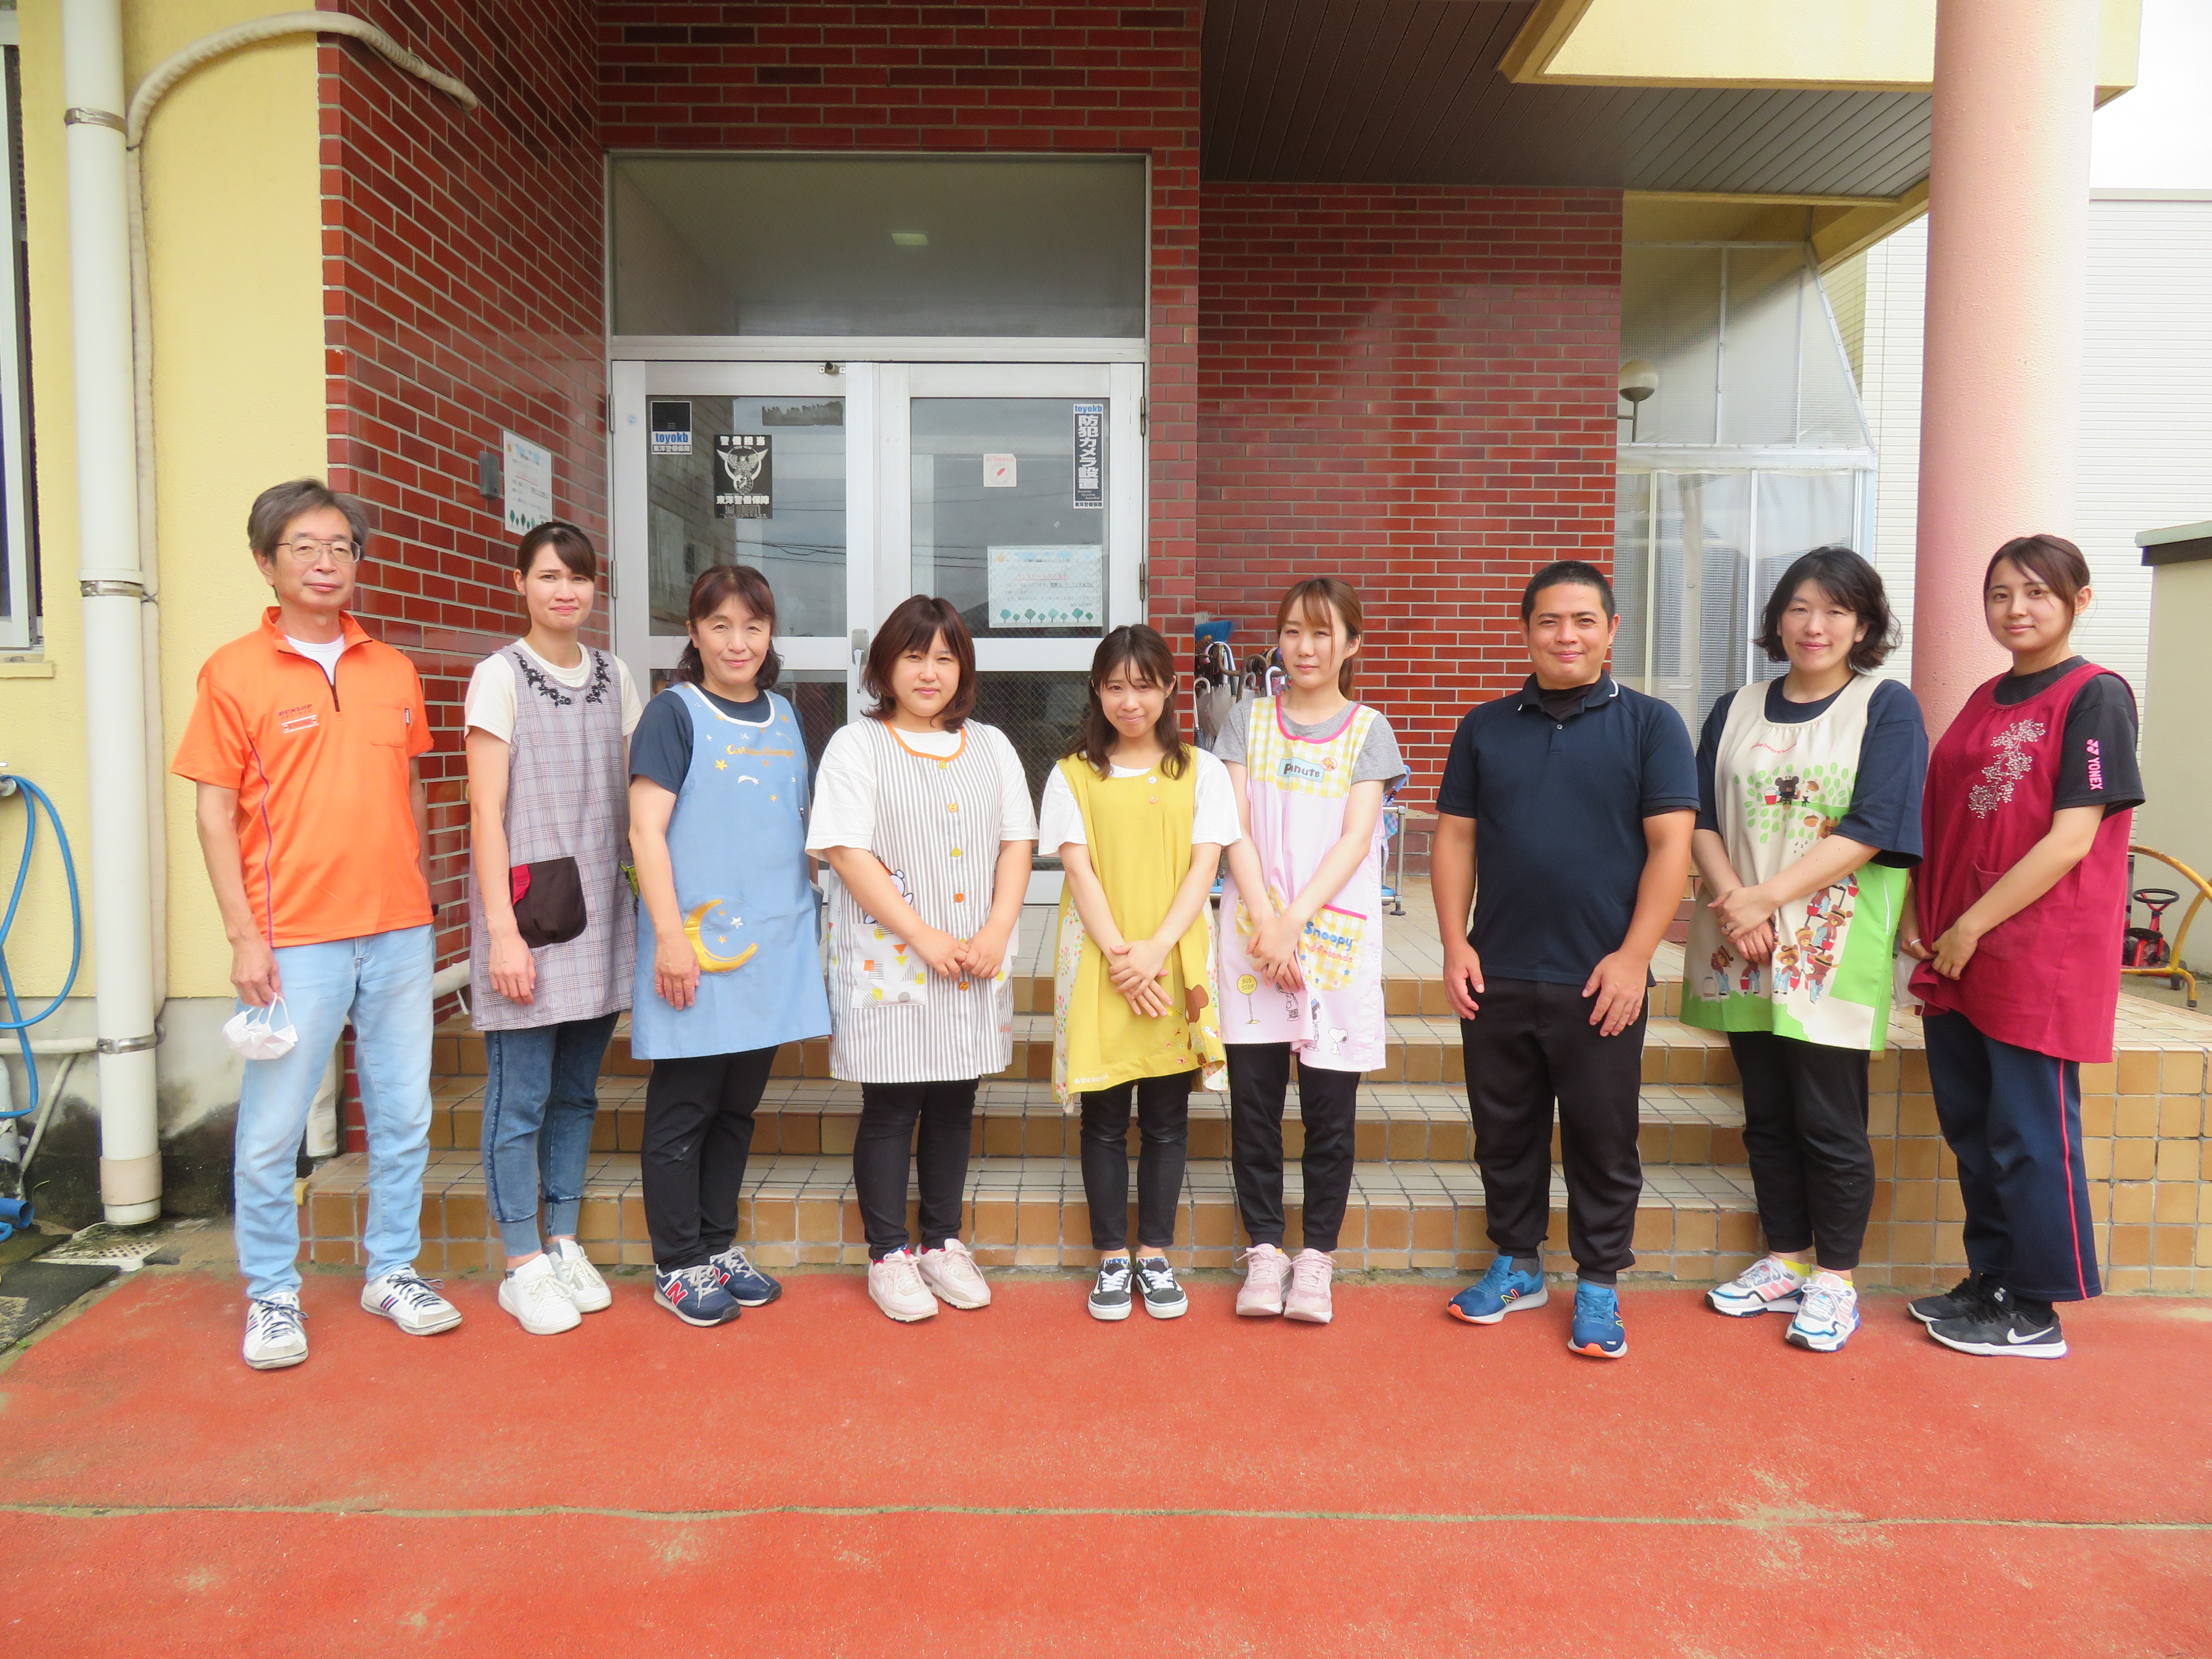 社会福祉法人遠賀会遠賀川保育園の職員の写真